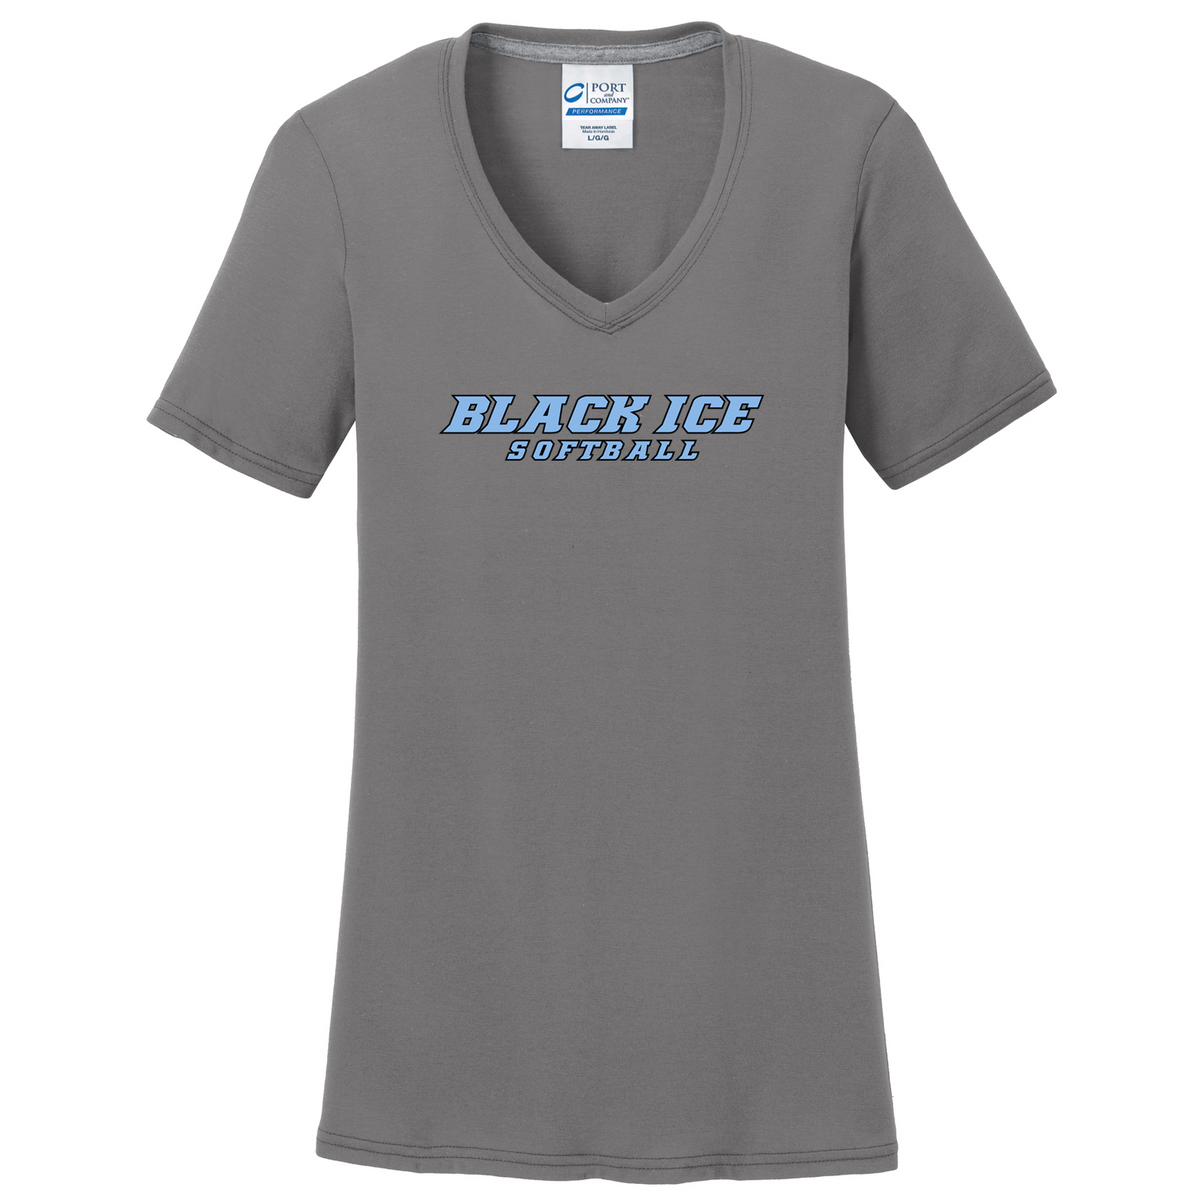 Black Ice Softball  Women's T-Shirt